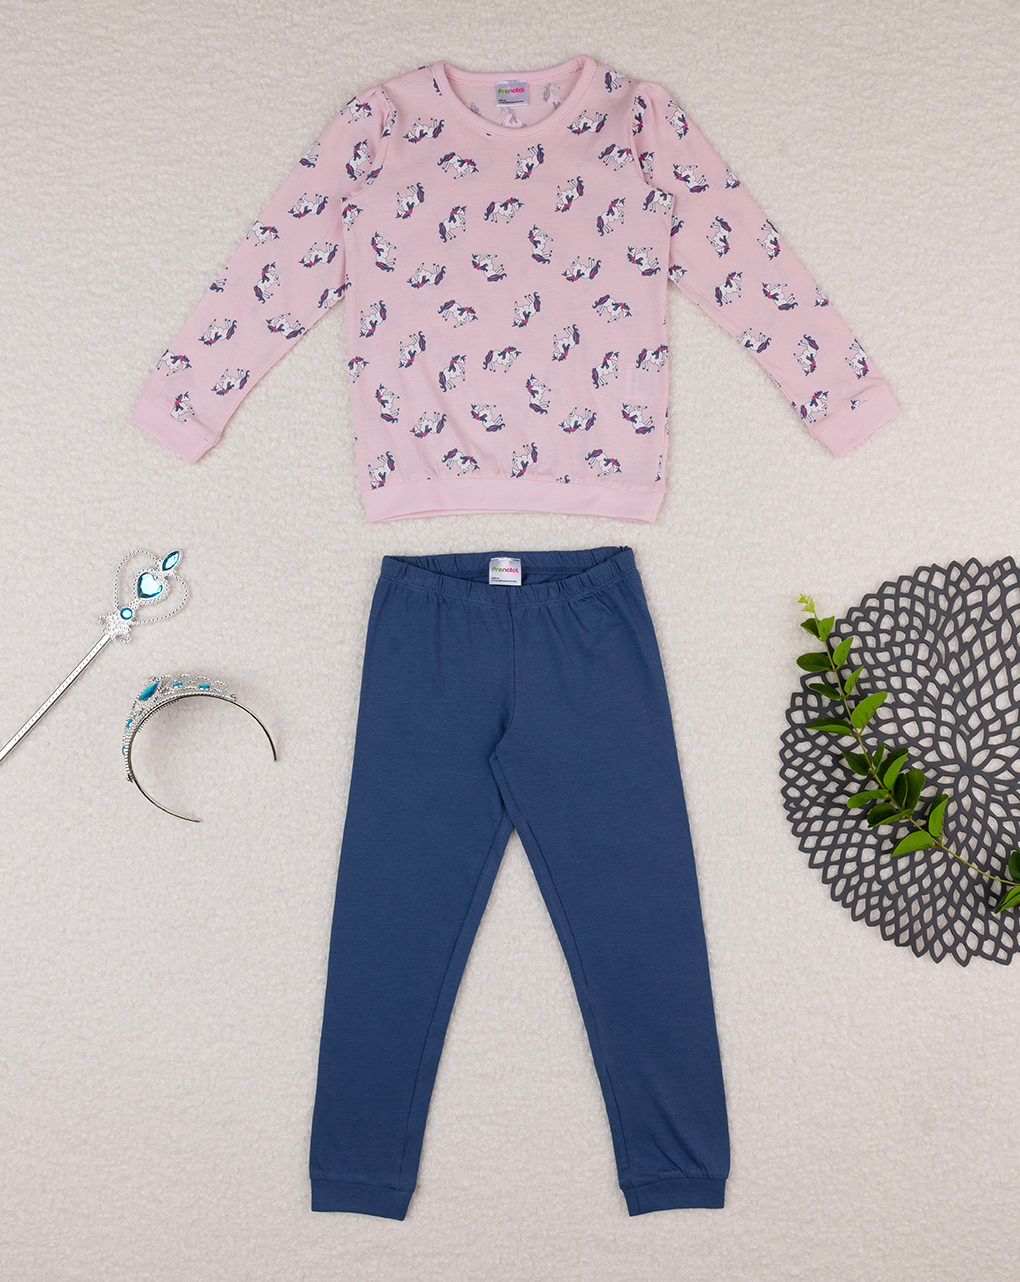 παιδική πιτζάμα ροζ/μπλε με μονόκερους για κορίτσι